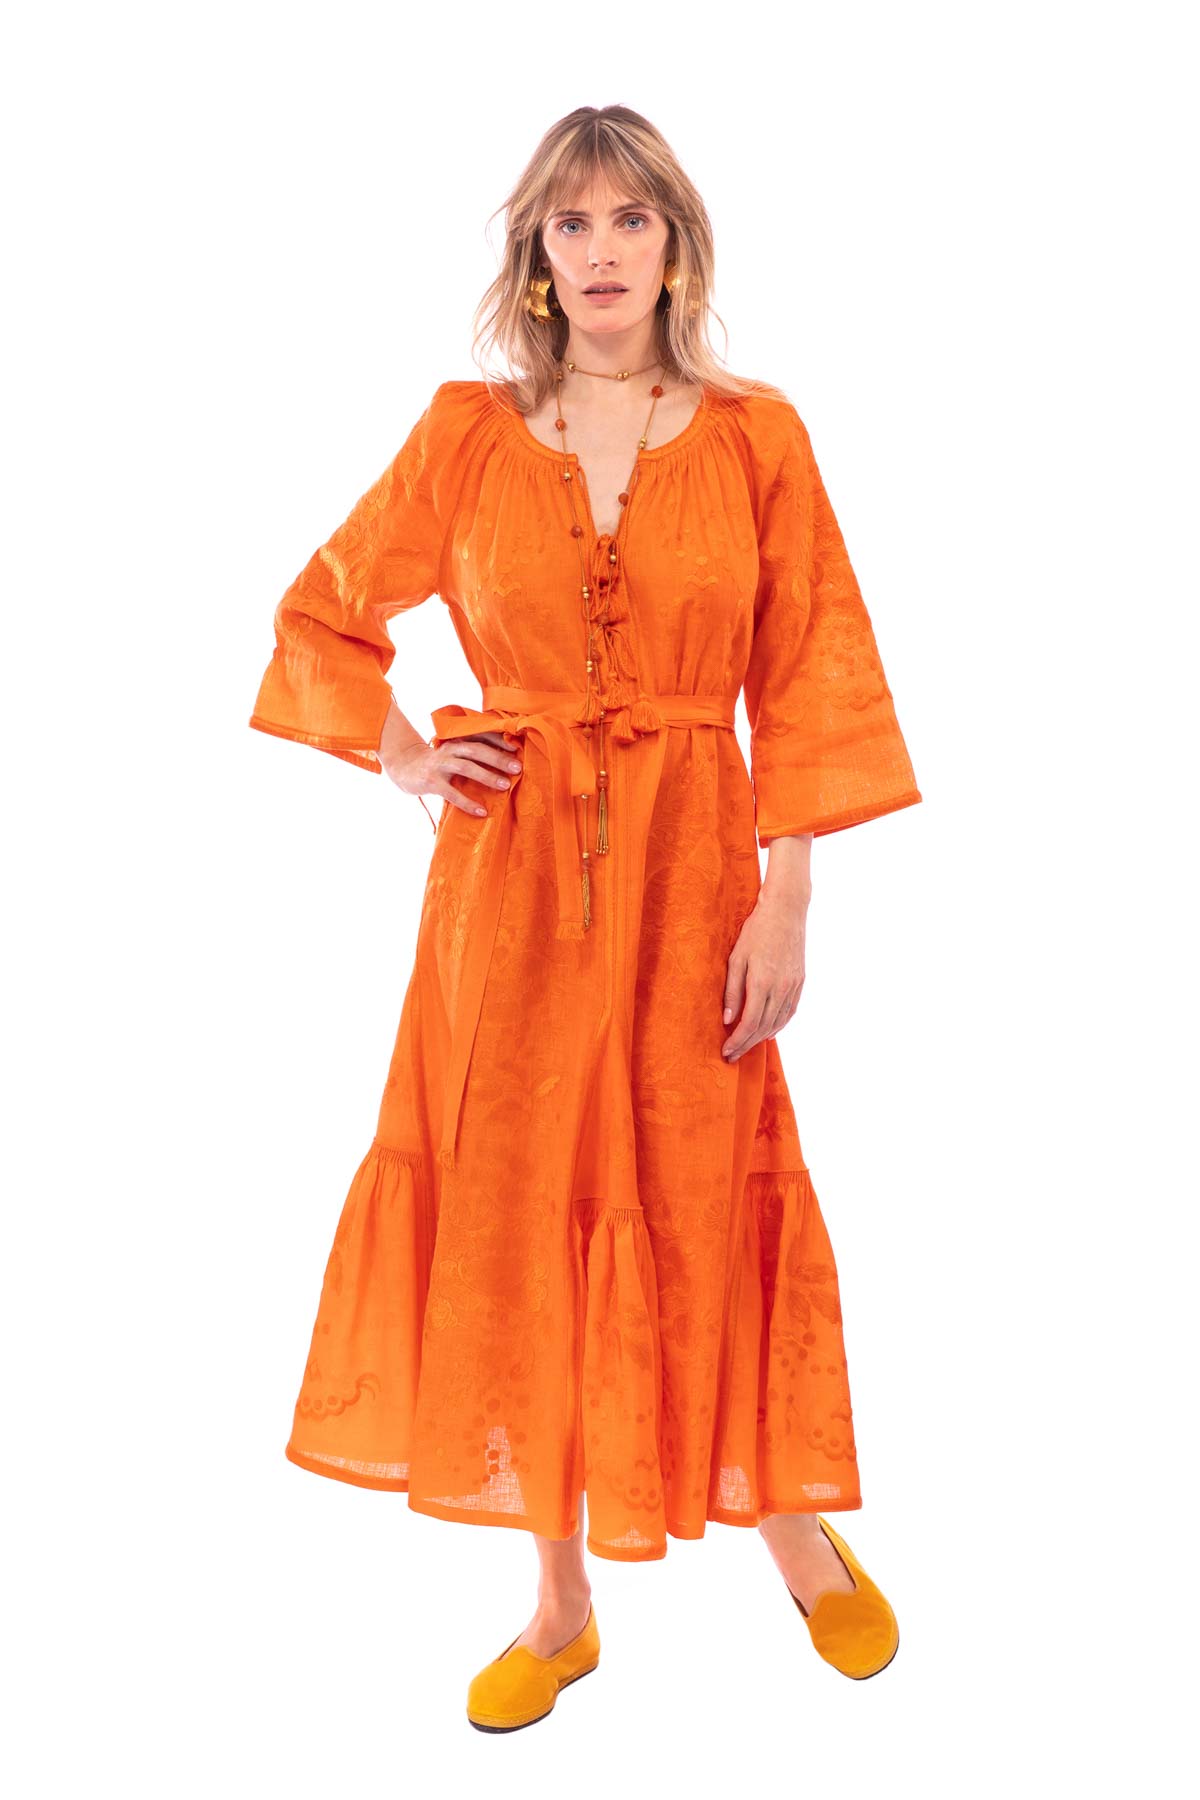 Hops Embroidered Dress - Orange